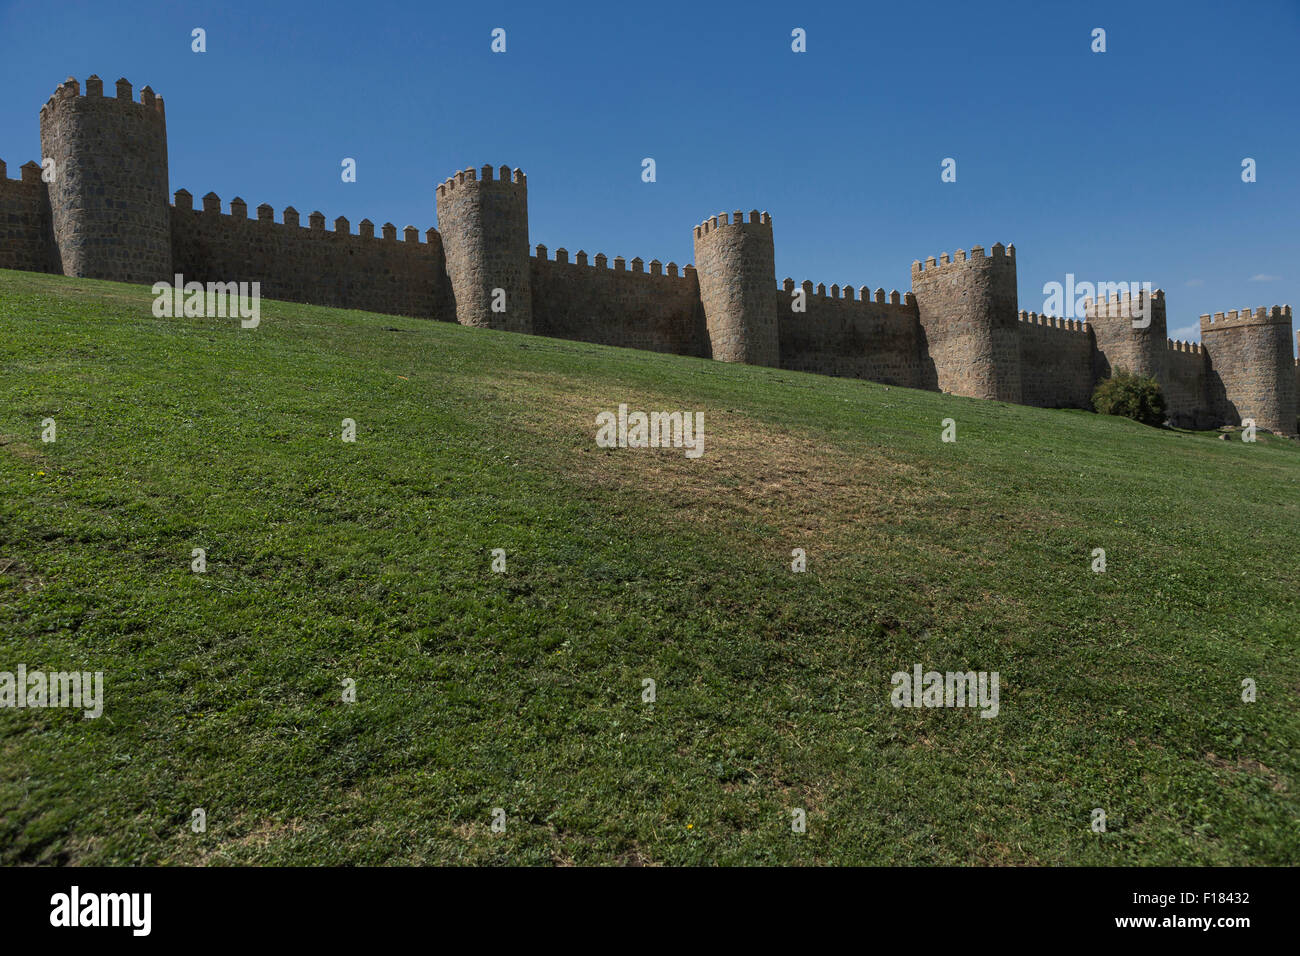 Avila, Spagna - 10 August 2015: mura medievali della città di Avila. Considerati i meglio conservati in Europa, Avila, Spagna Foto Stock